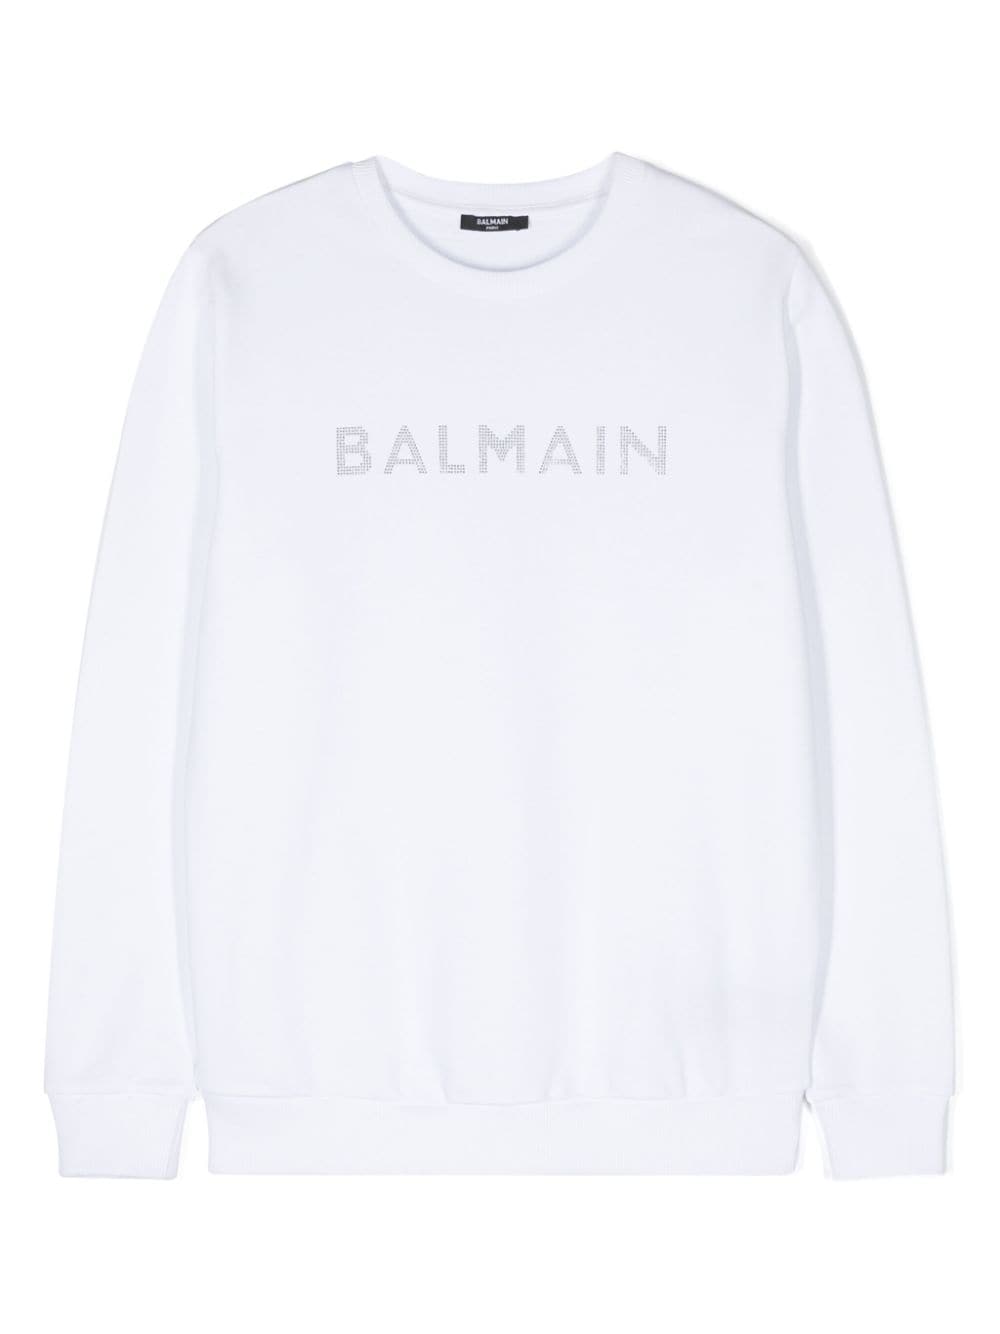 Balmain Kids crystal-embellished logo sweatshirt - White von Balmain Kids